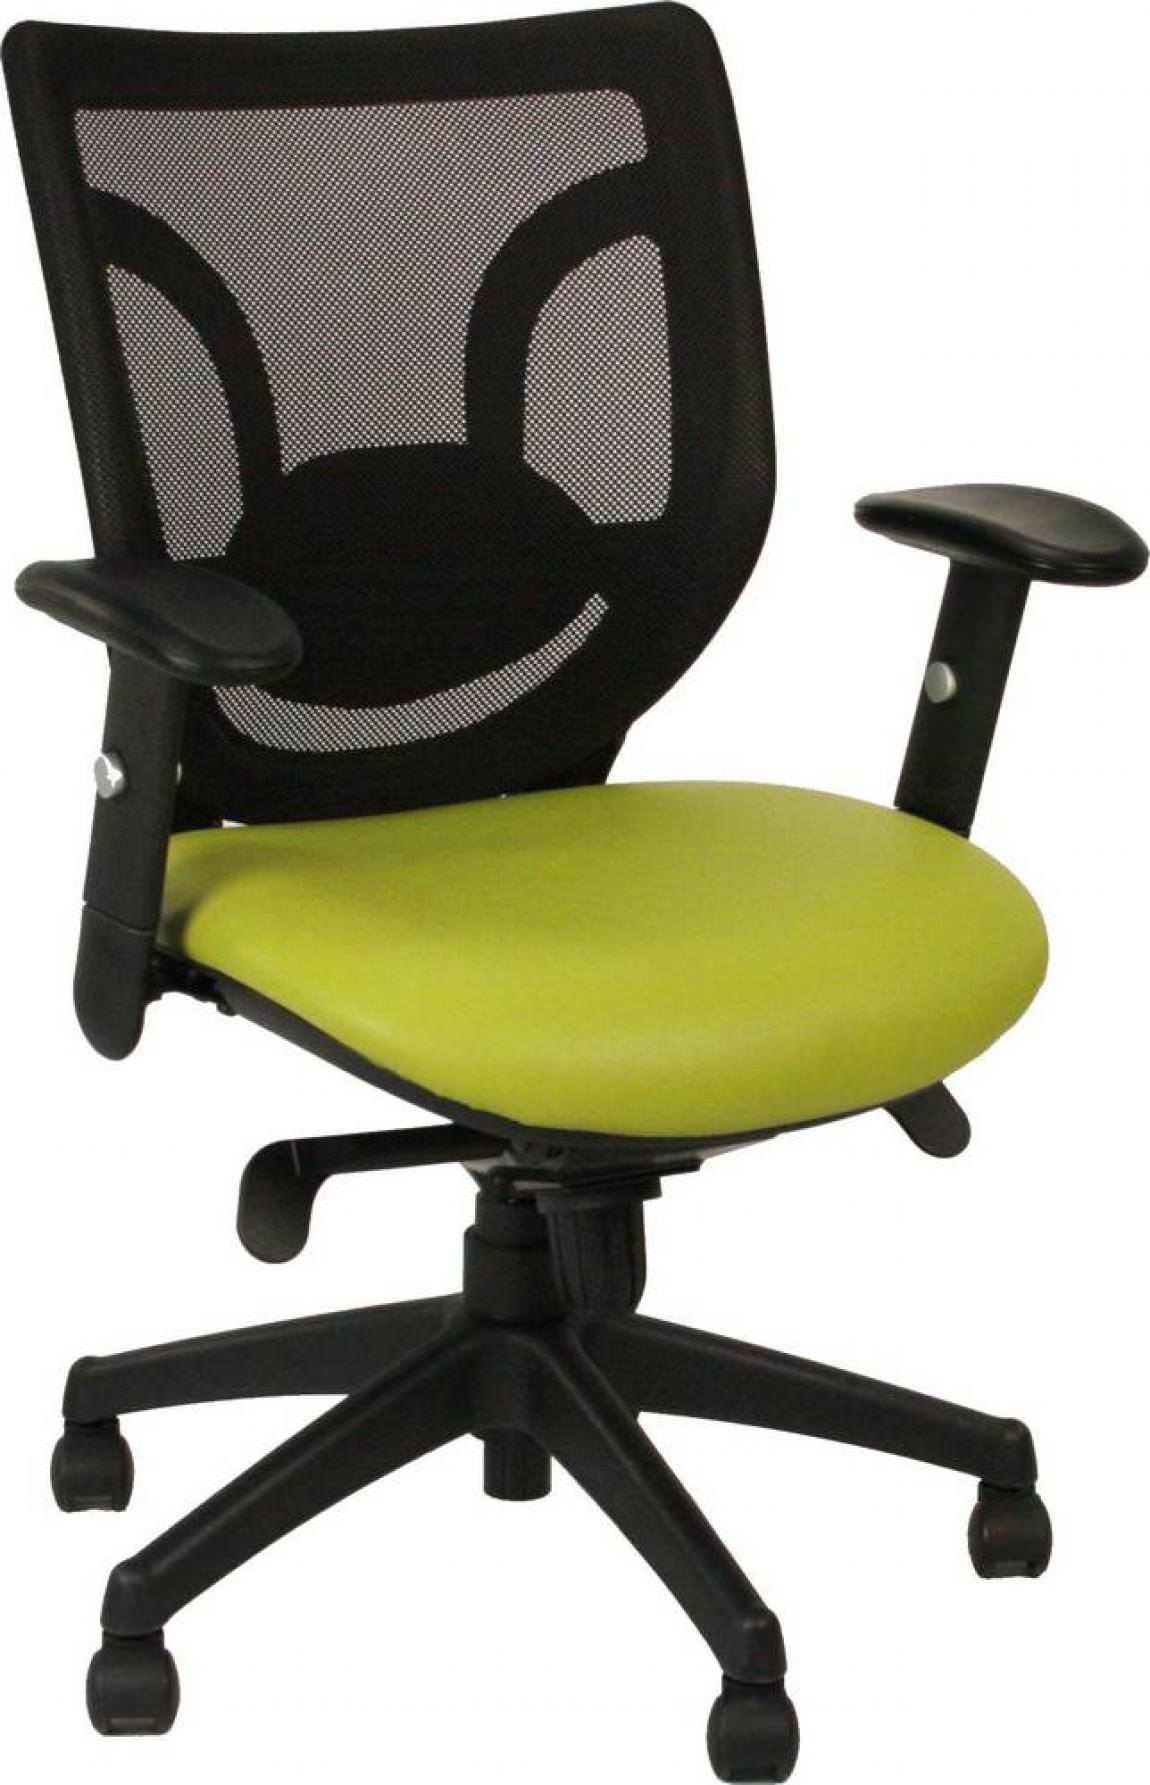 Heavy Duty Rolling Office Chair